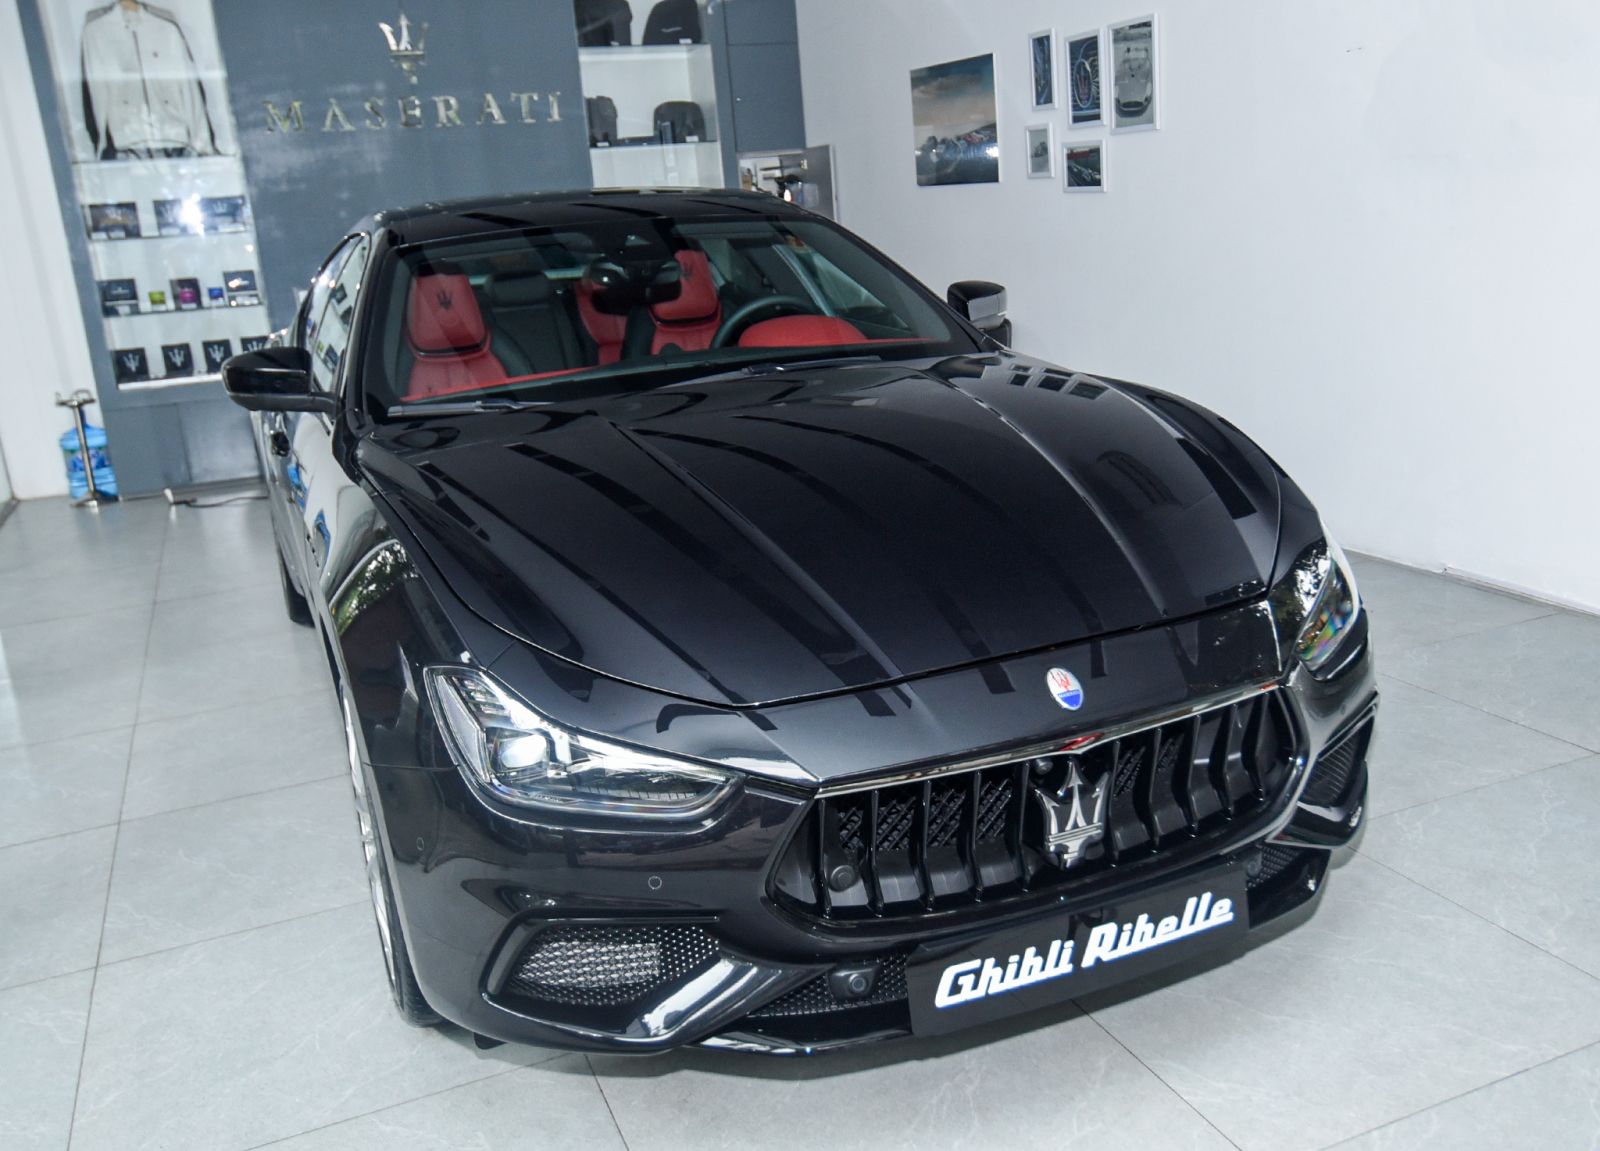 Maserati, Ghibli Ribelle, Maserati V6